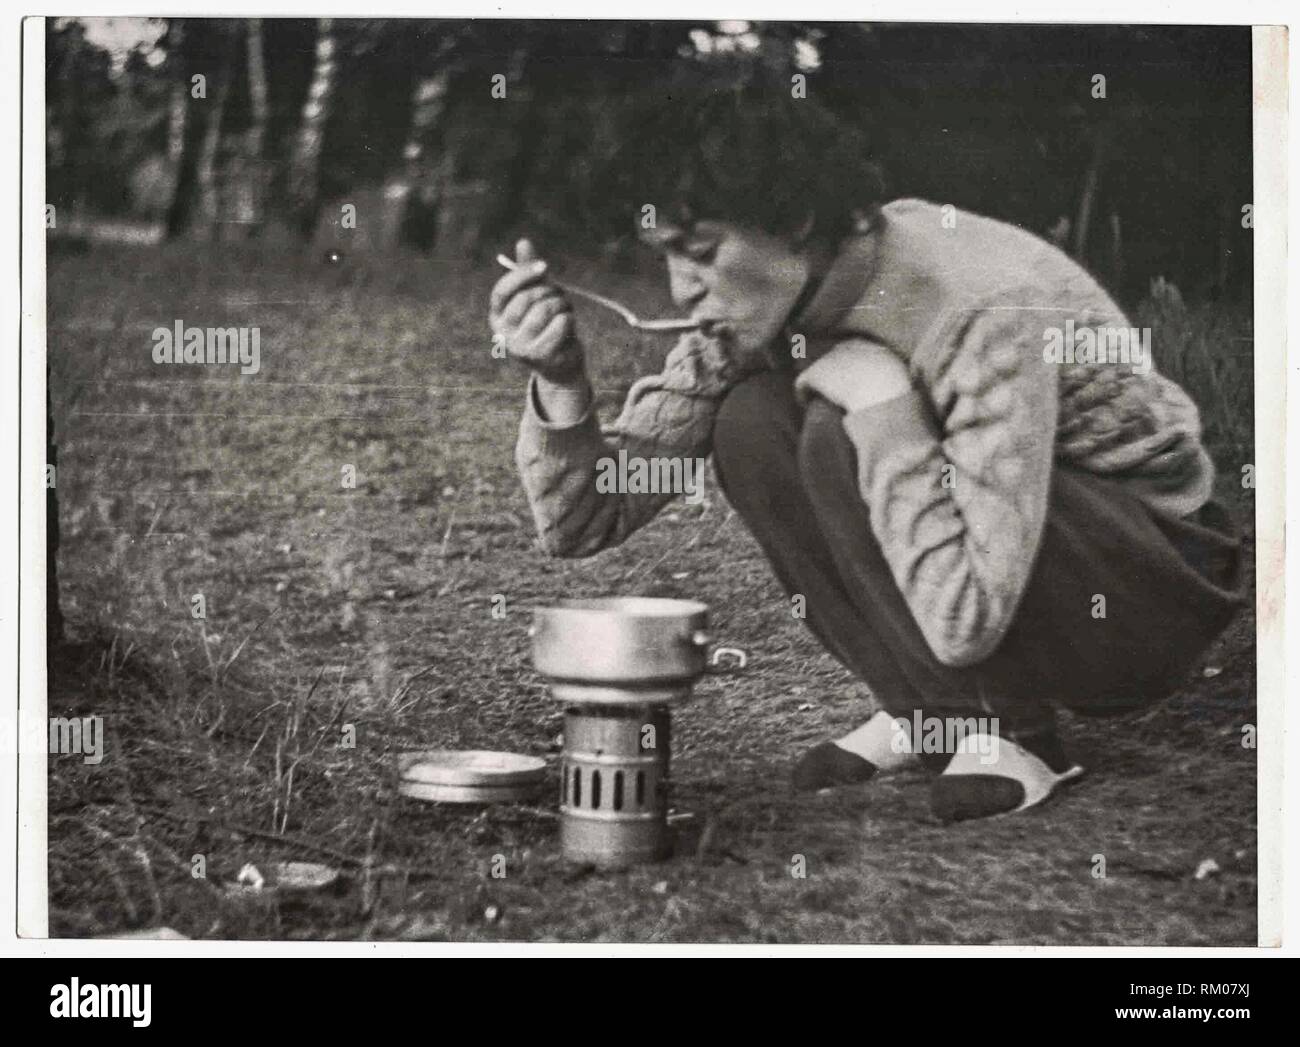 DIE TSCHECHOSLOWAKISCHE SOZIALISTISCHE REPUBLIK - UM 1970s: Retro-Foto zeigt weibliche Touristen, die Essen probieren. Weibliche Touristen kochen Lebensmittel in Camping Topf. Schwarzweißfoto. 1970s Stockfoto